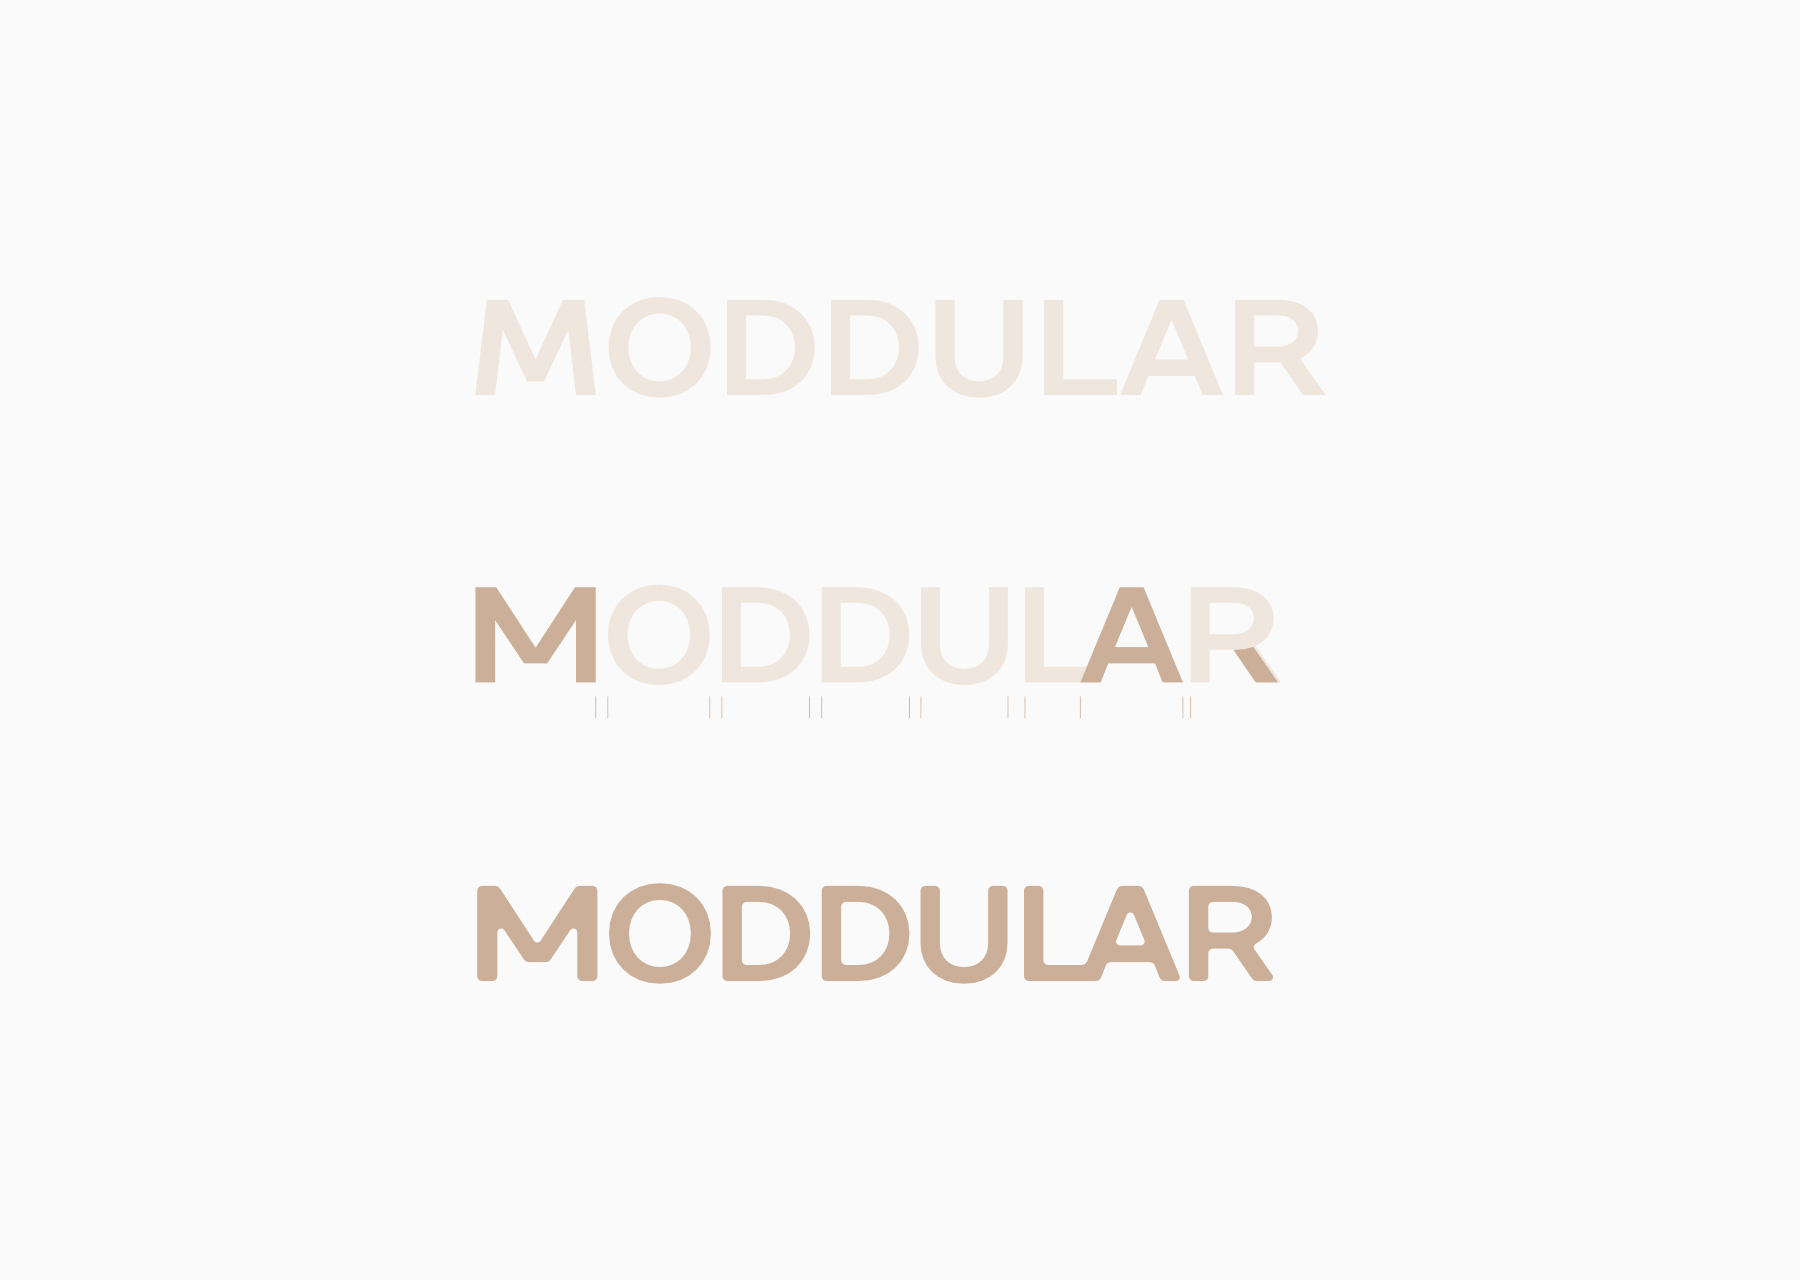 moddular construccion logotipo - javier real